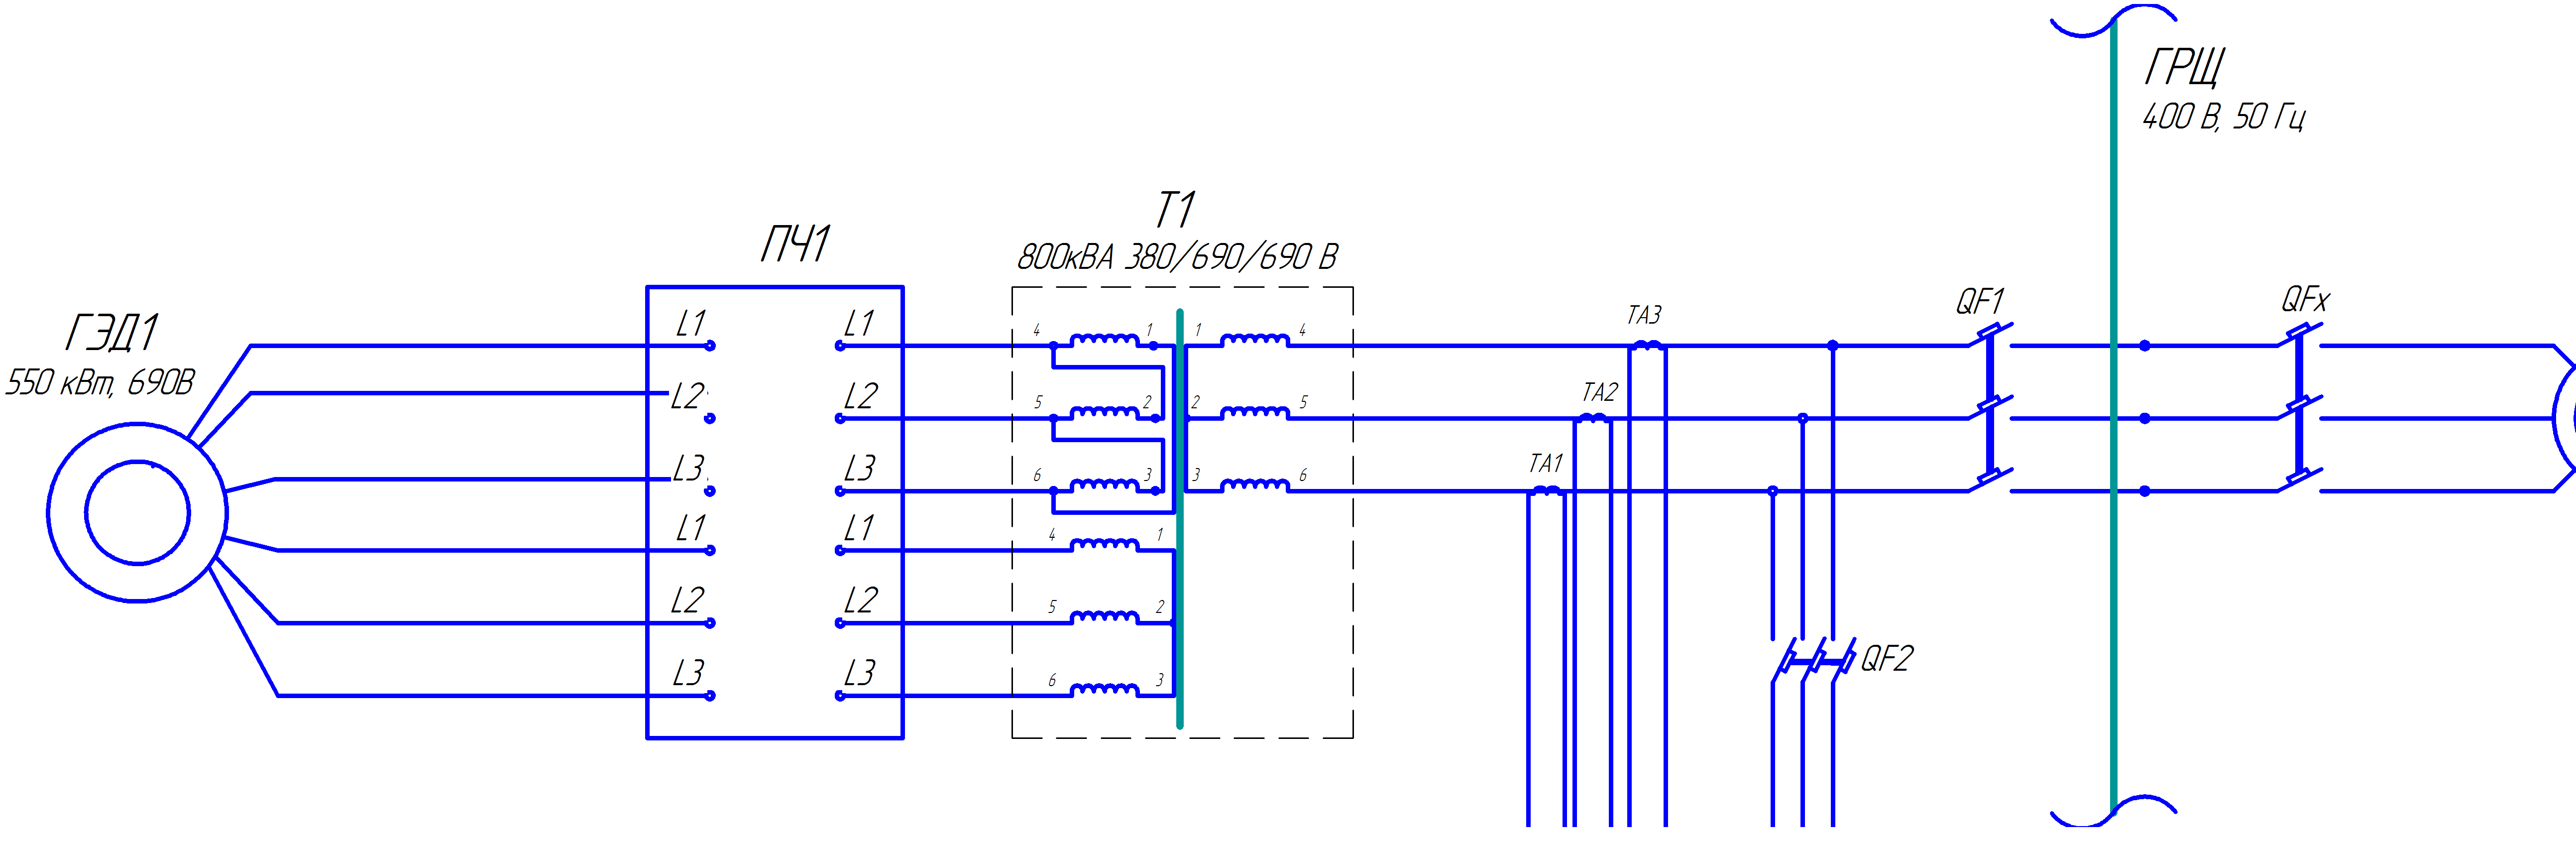 Схема подключения АФГ-25 в сети электроснабжения МГС «Вайгач» через разделительный трансформатор